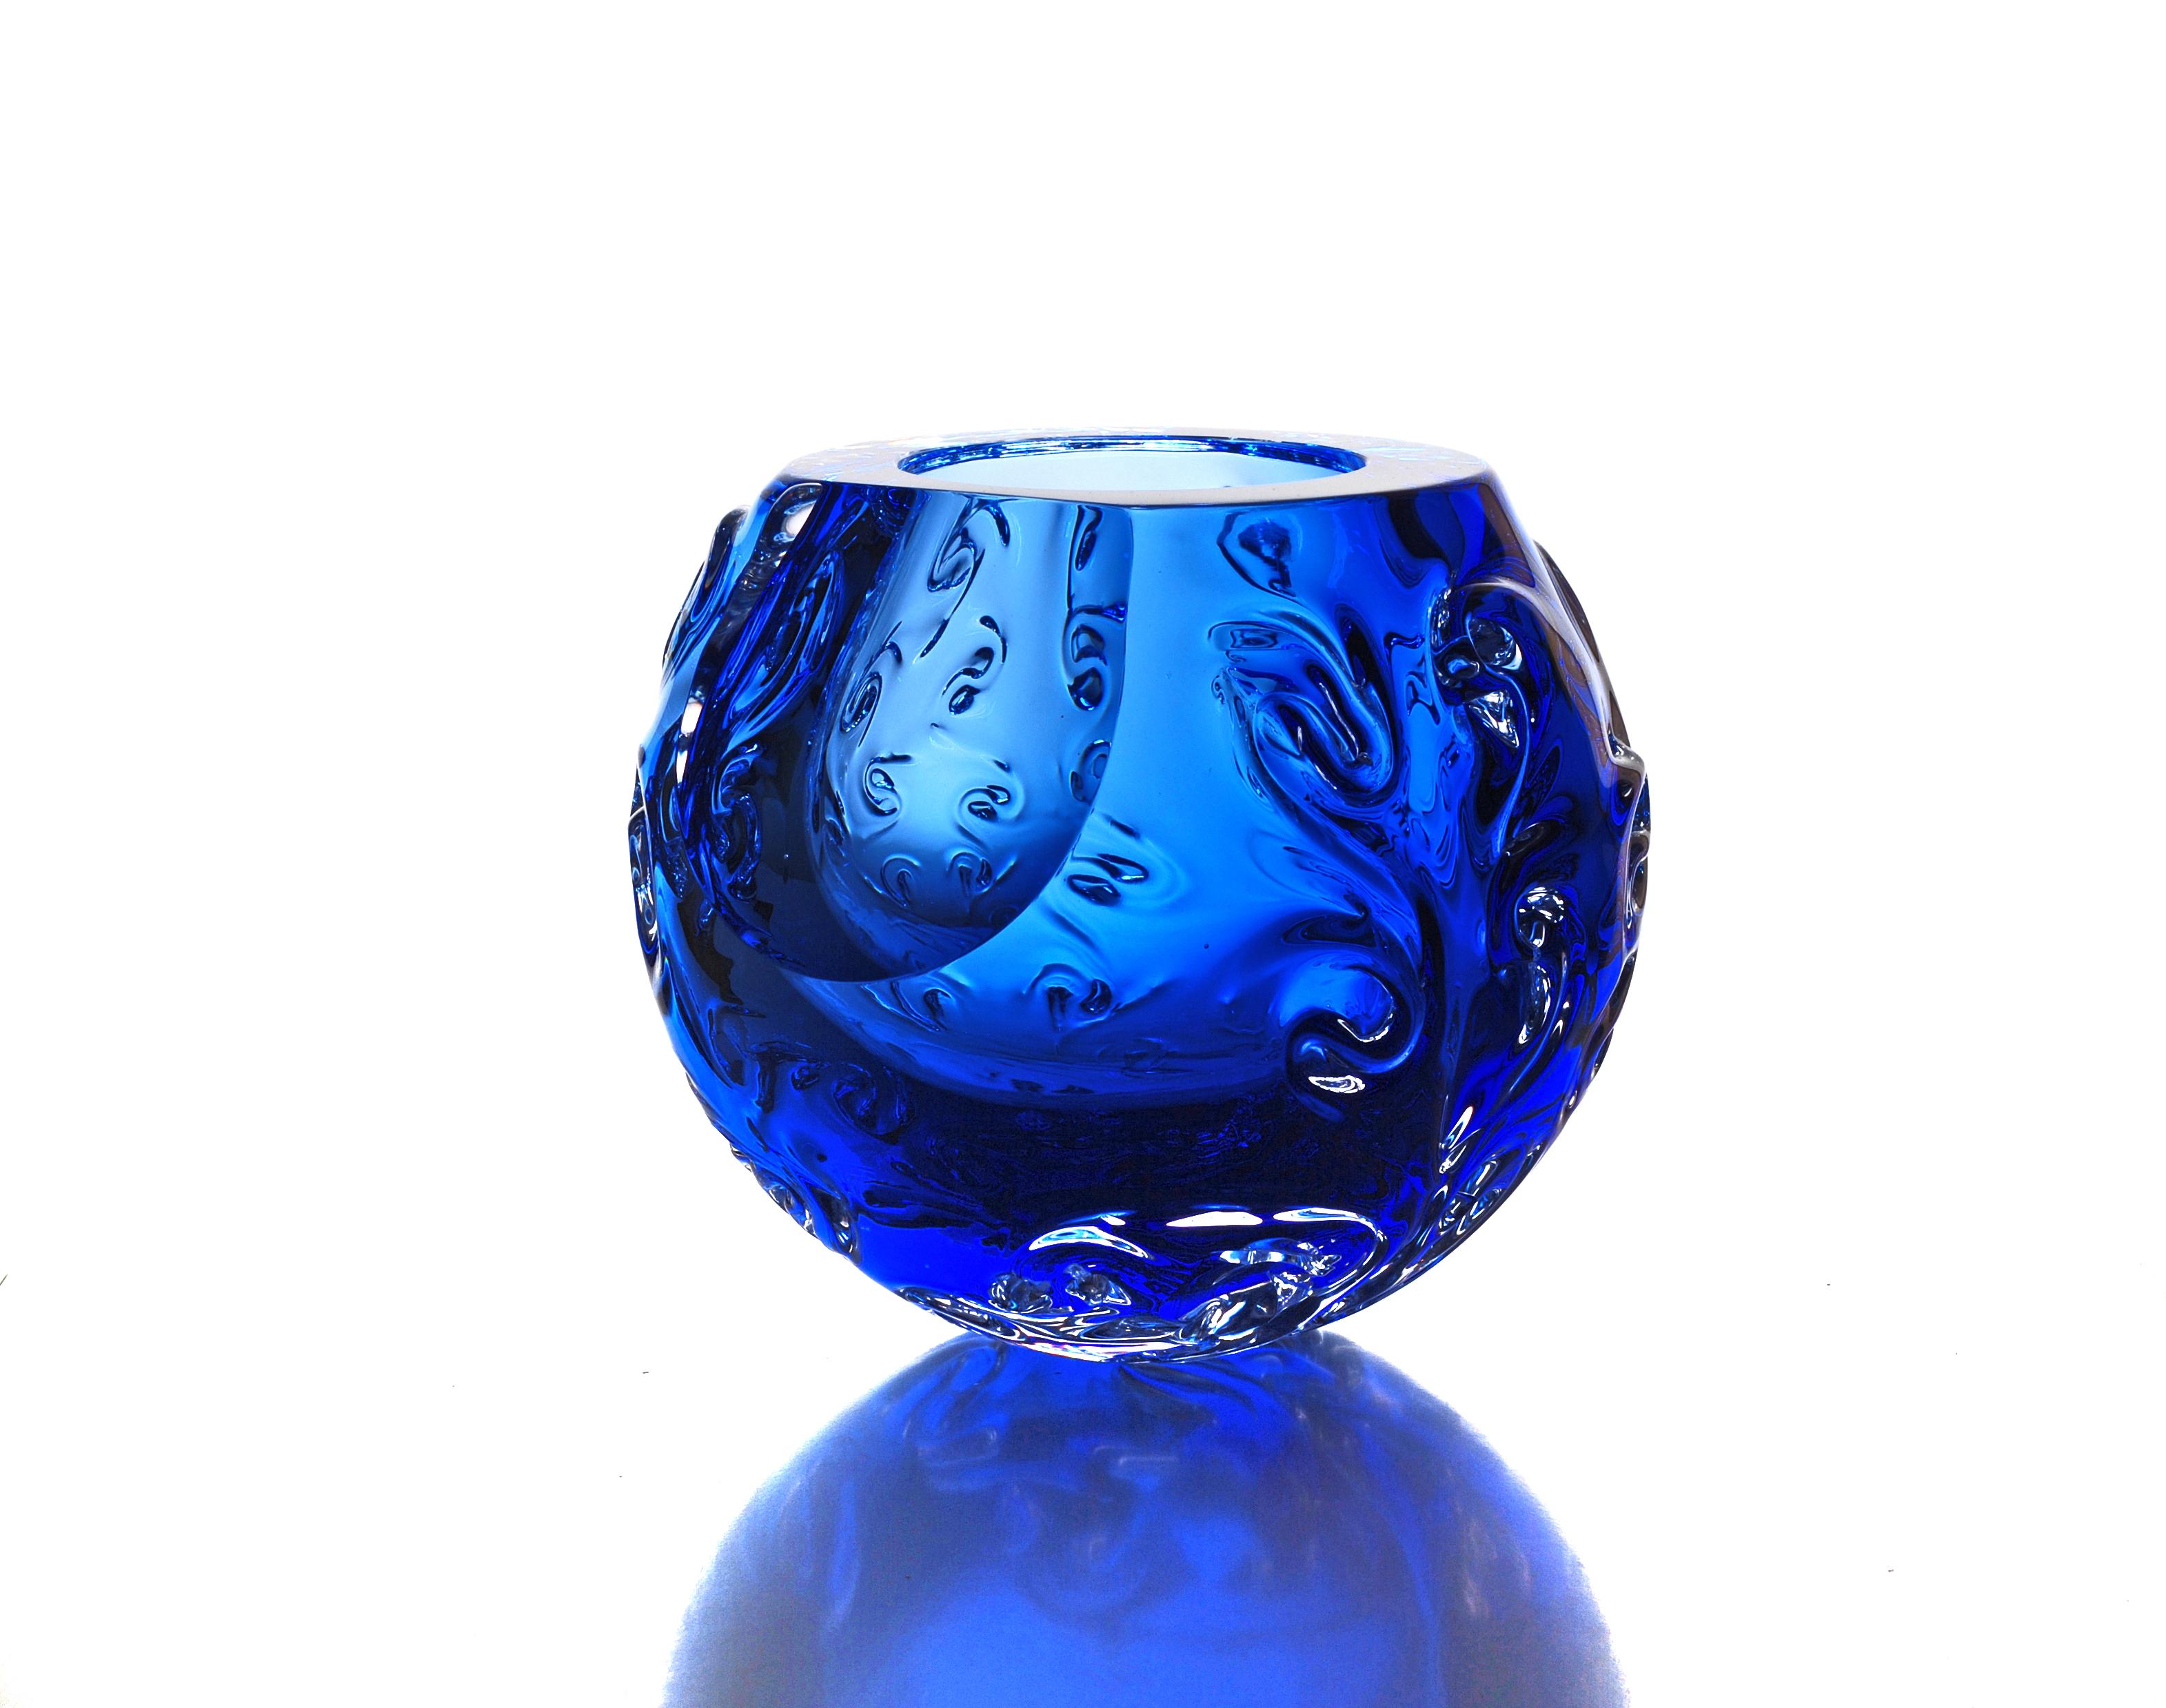 Strukturelle Schale mit ikonischem, organischem Design. Gefäß aus massivem, blauem, handgeschliffenem Glas. Es stellt einen Planeten - einen Asteroiden, ein Fragment der kosmischen Materie dar. Die Schale entsteht durch spontane Formung der heißen